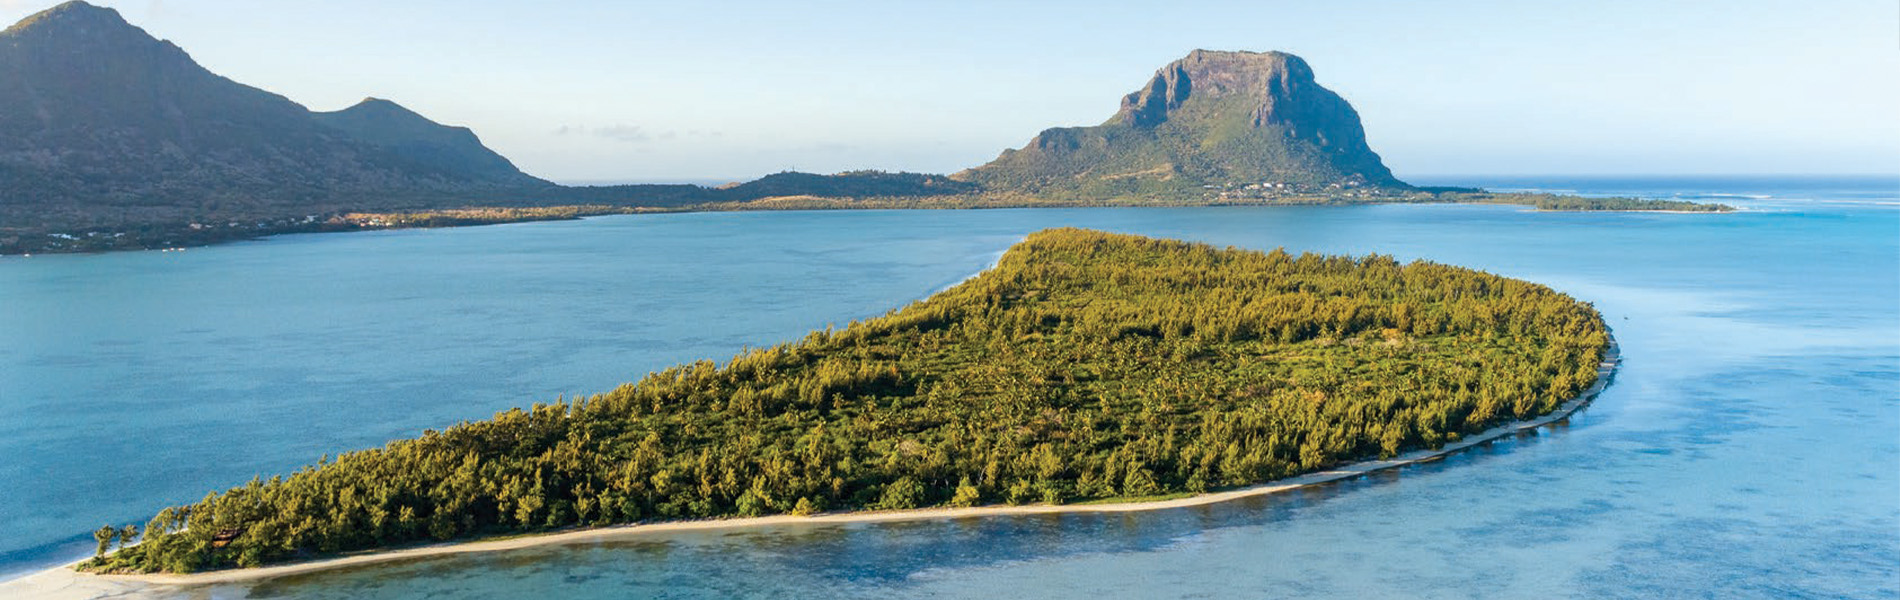 Mauritius_Island